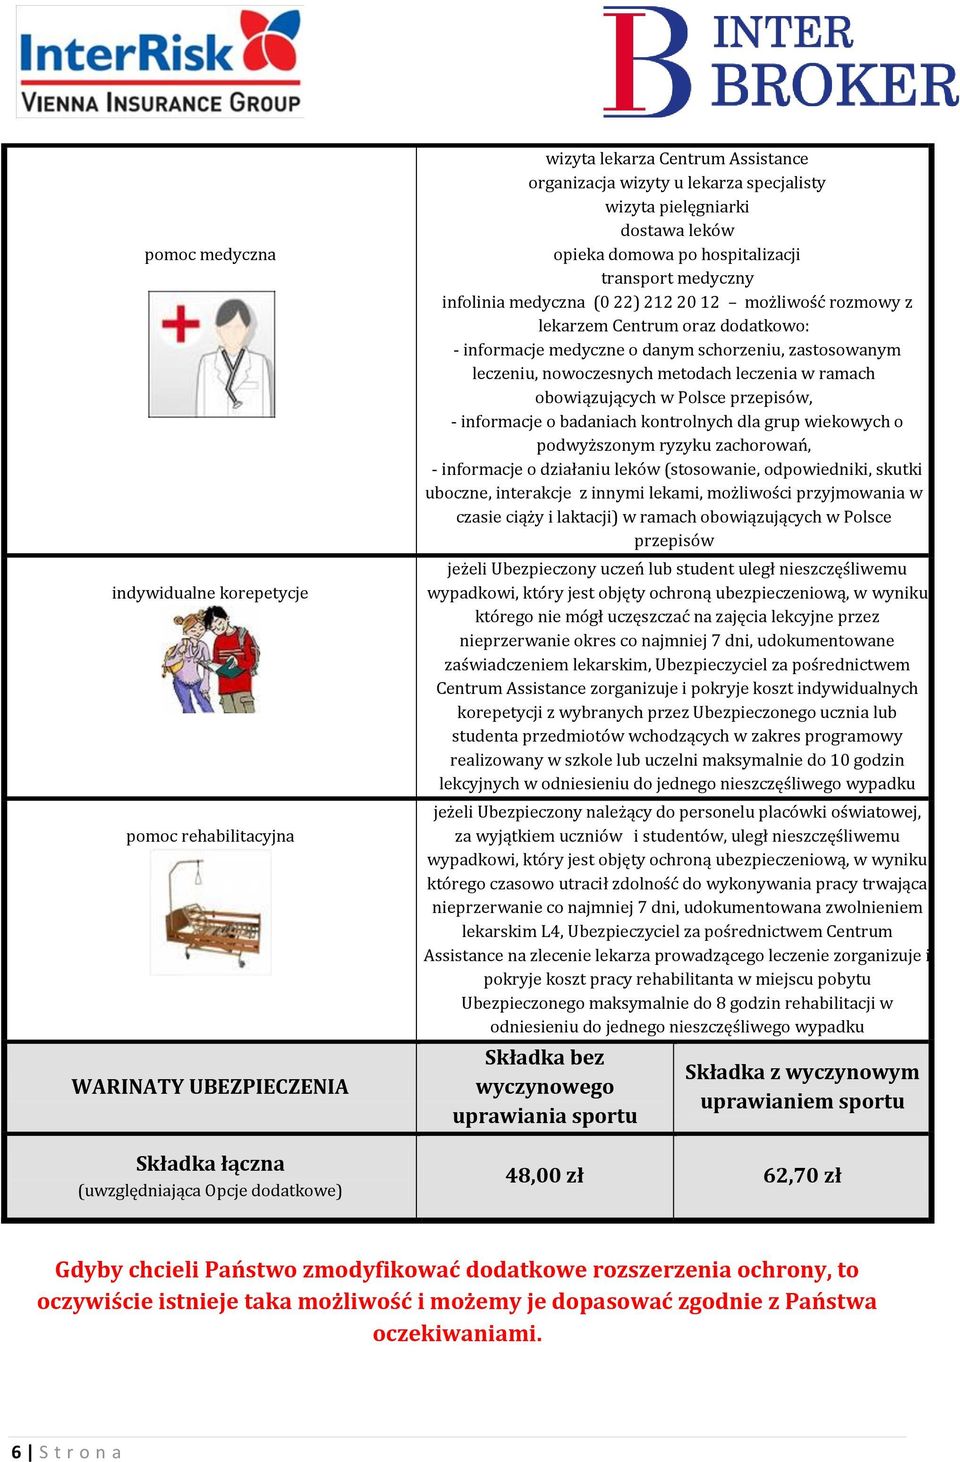 medyczne o danym schorzeniu, zastosowanym leczeniu, nowoczesnych metodach leczenia w ramach obowiązujących w Polsce przepisów, - informacje o badaniach kontrolnych dla grup wiekowych o podwyższonym